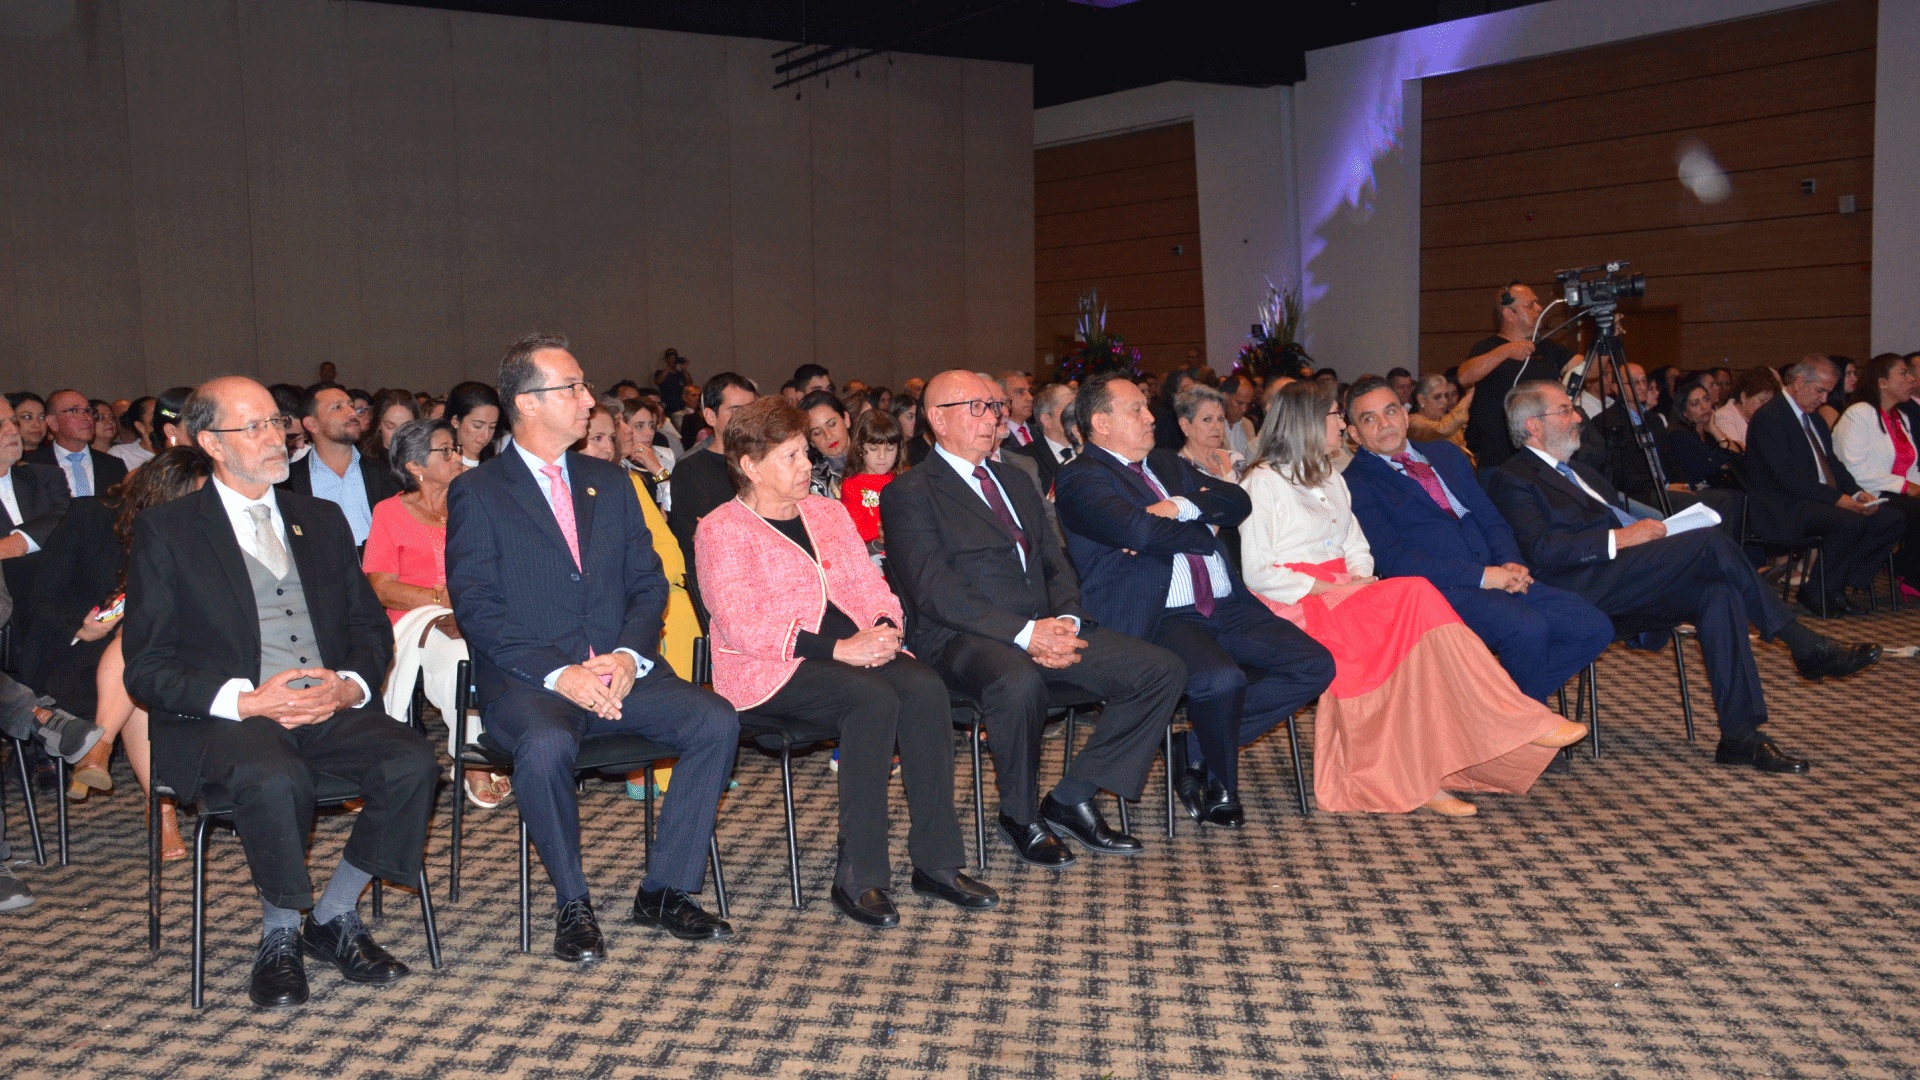 Noche de la Excelencia Uniquindiana, una gala matizada por el reconocimiento institucional y alta calidad académica